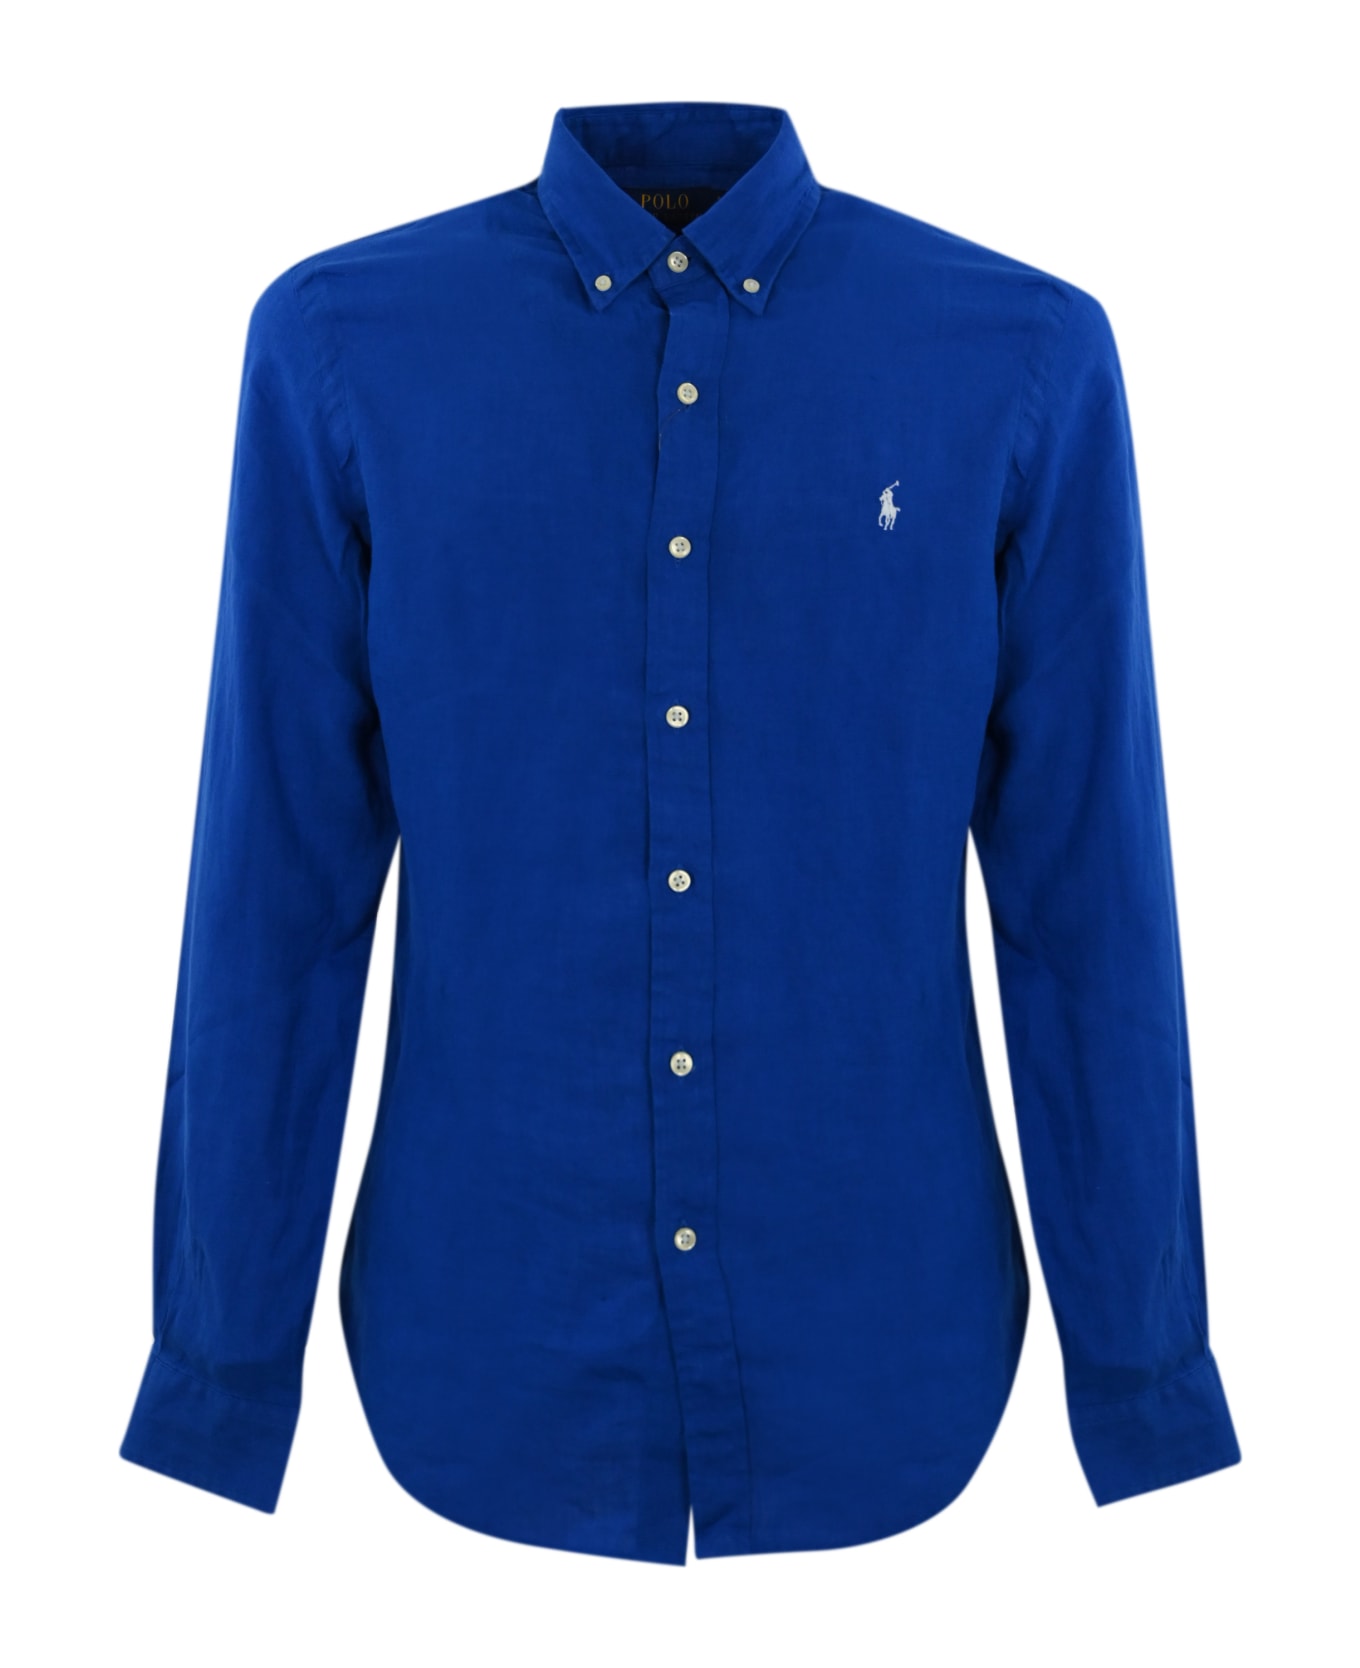 Ralph Lauren Linen Shirt With Pony Logo - HERITAGE BLUE